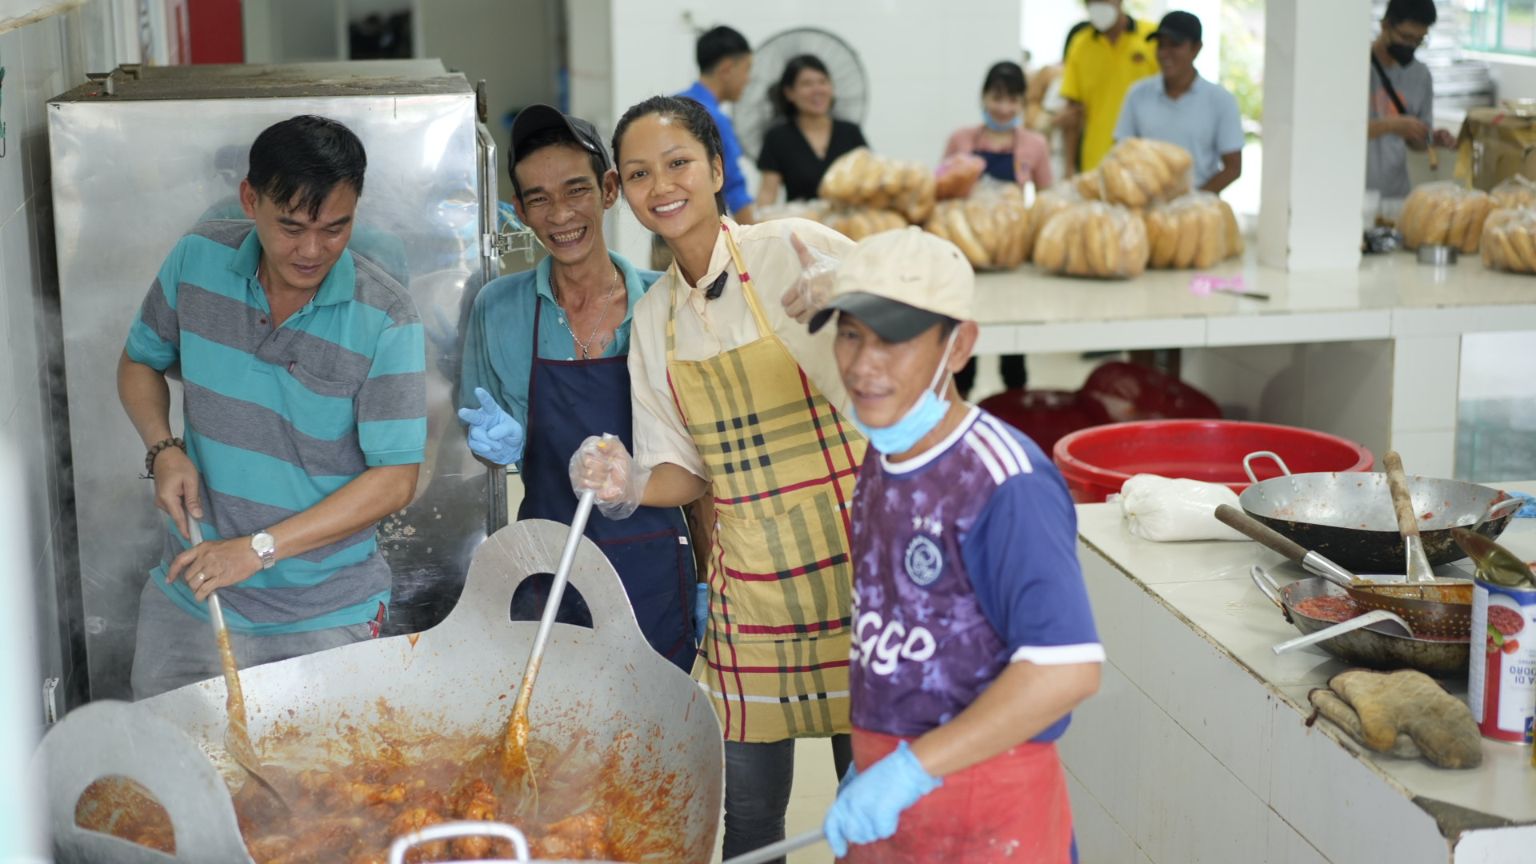 Hoa hậu HHen Niê vào bếp cùng các tình nguyện viên H’Hen Niê, Bảo Ngọc tặng quà, nấu ăn cho bệnh nhân HIV/AIDS